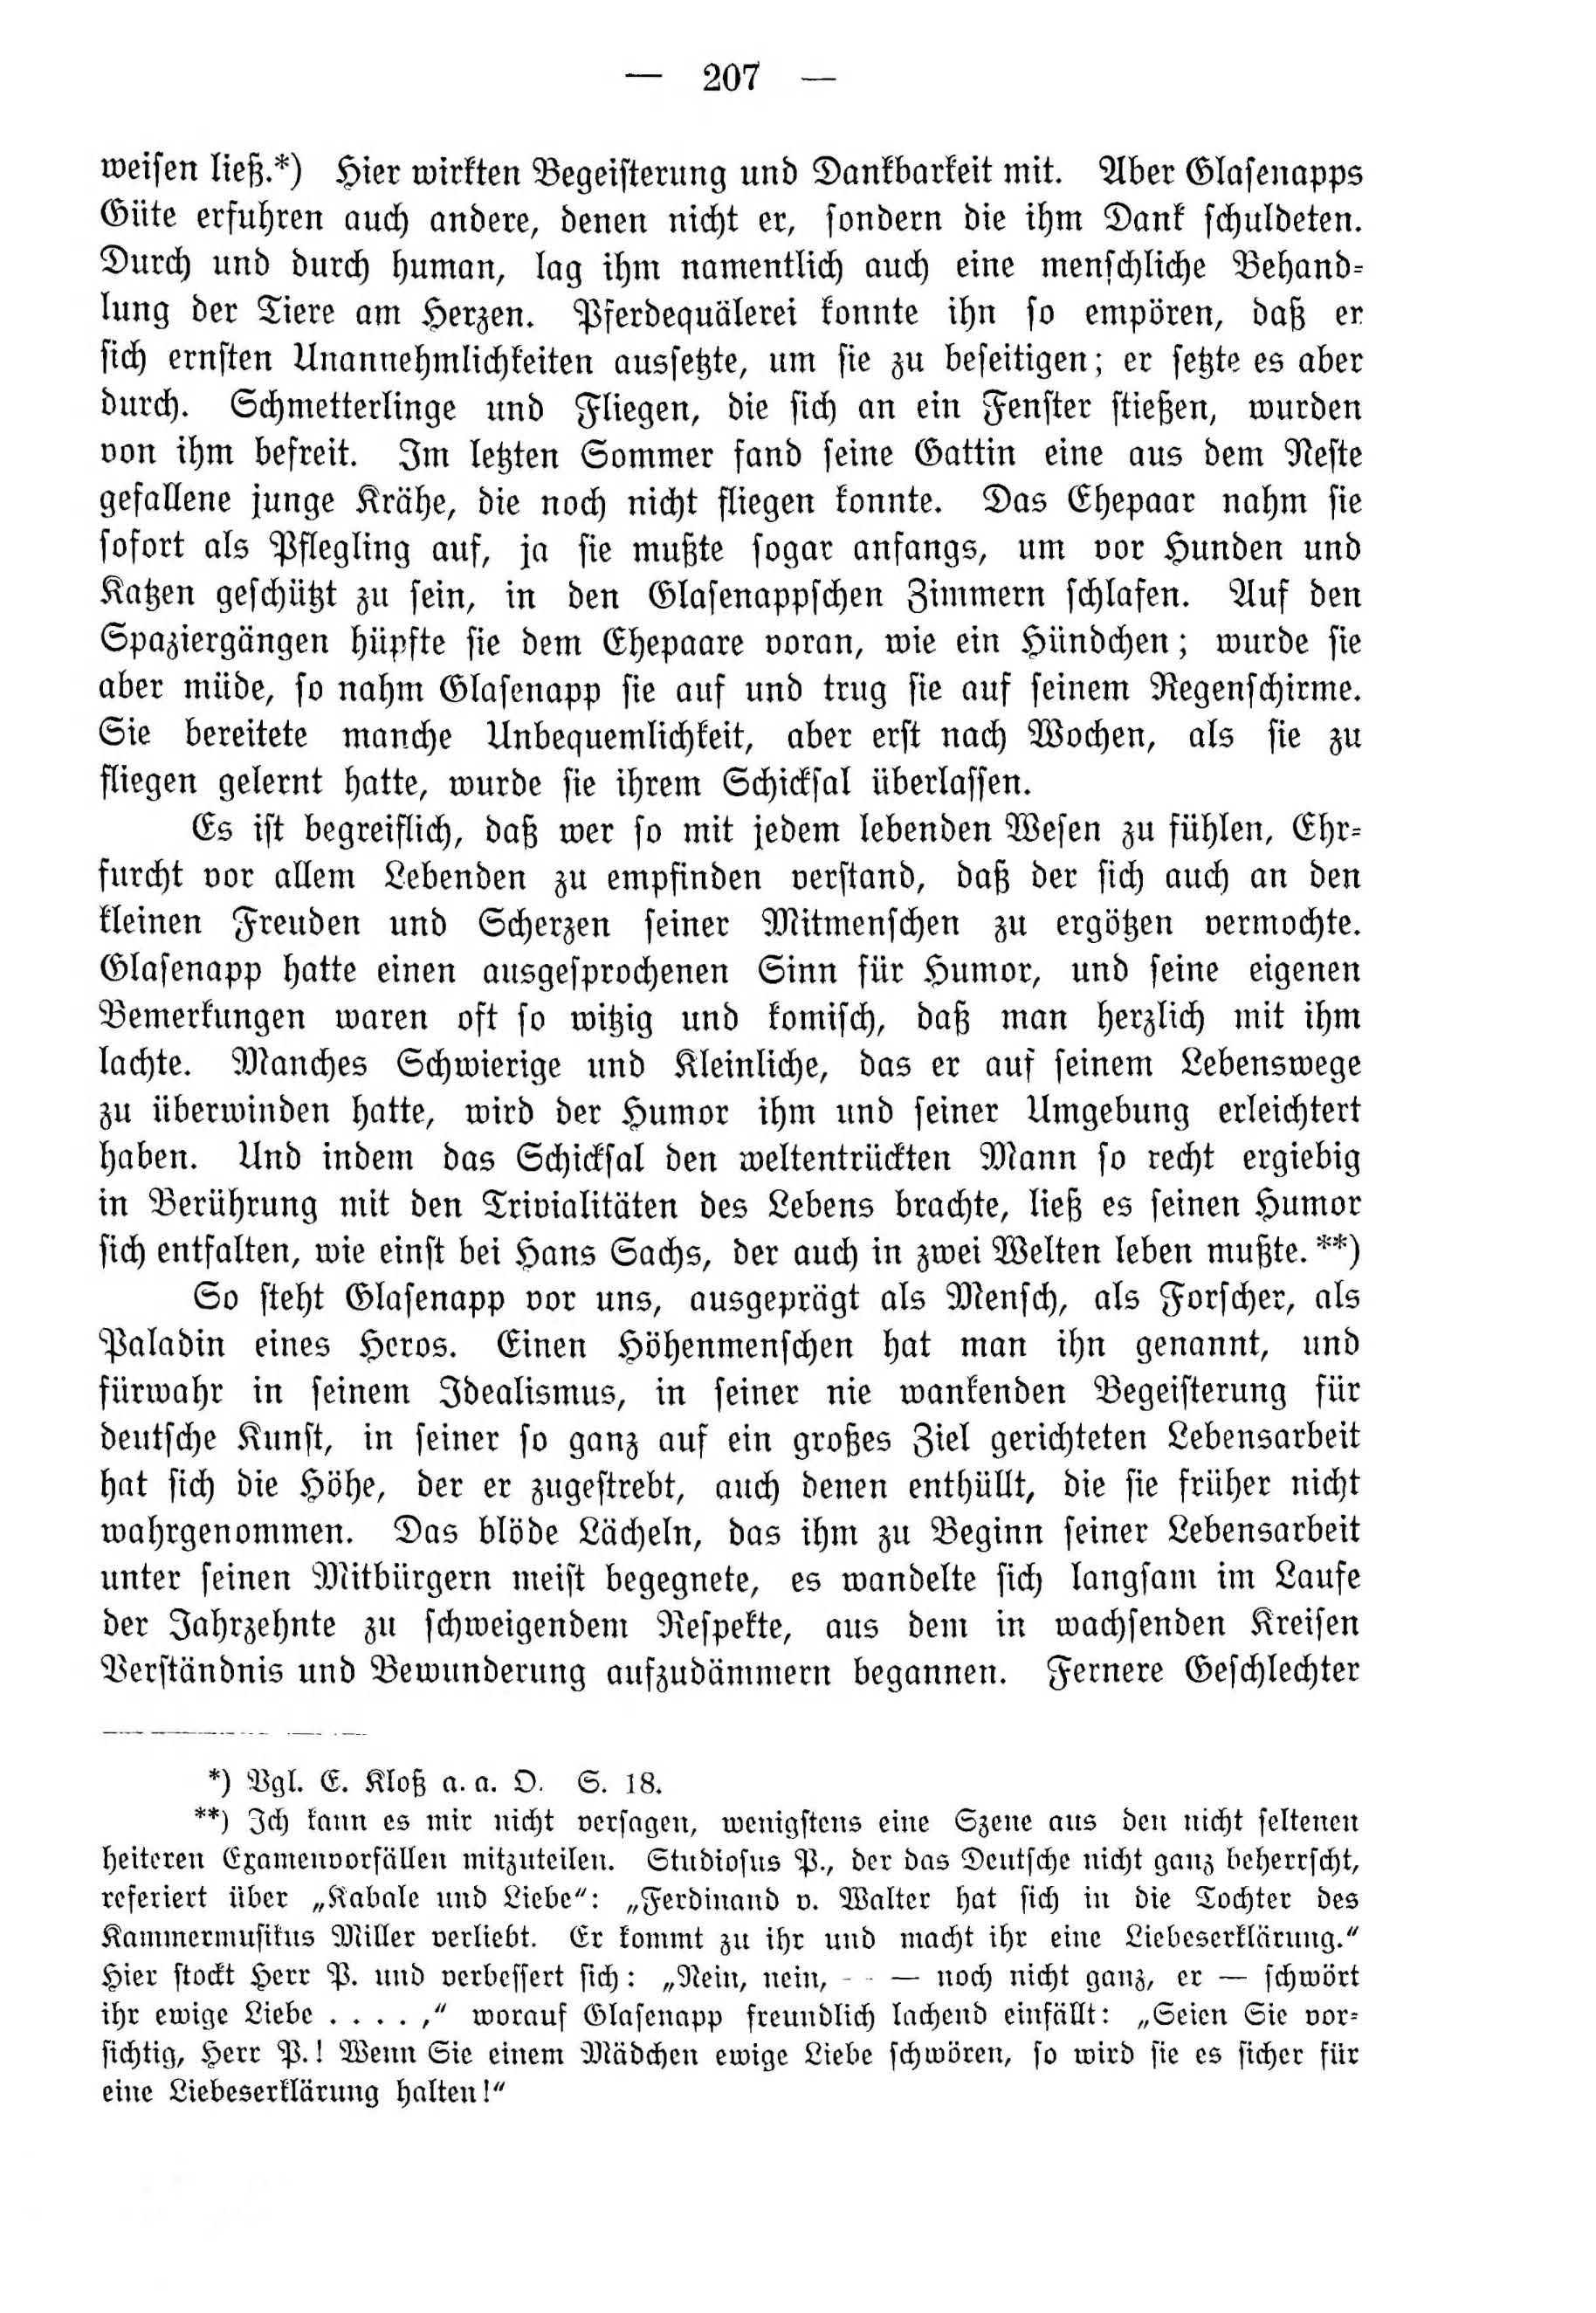 Deutsche Monatsschrift für Russland [4] (1915) | 207. (207) Haupttext